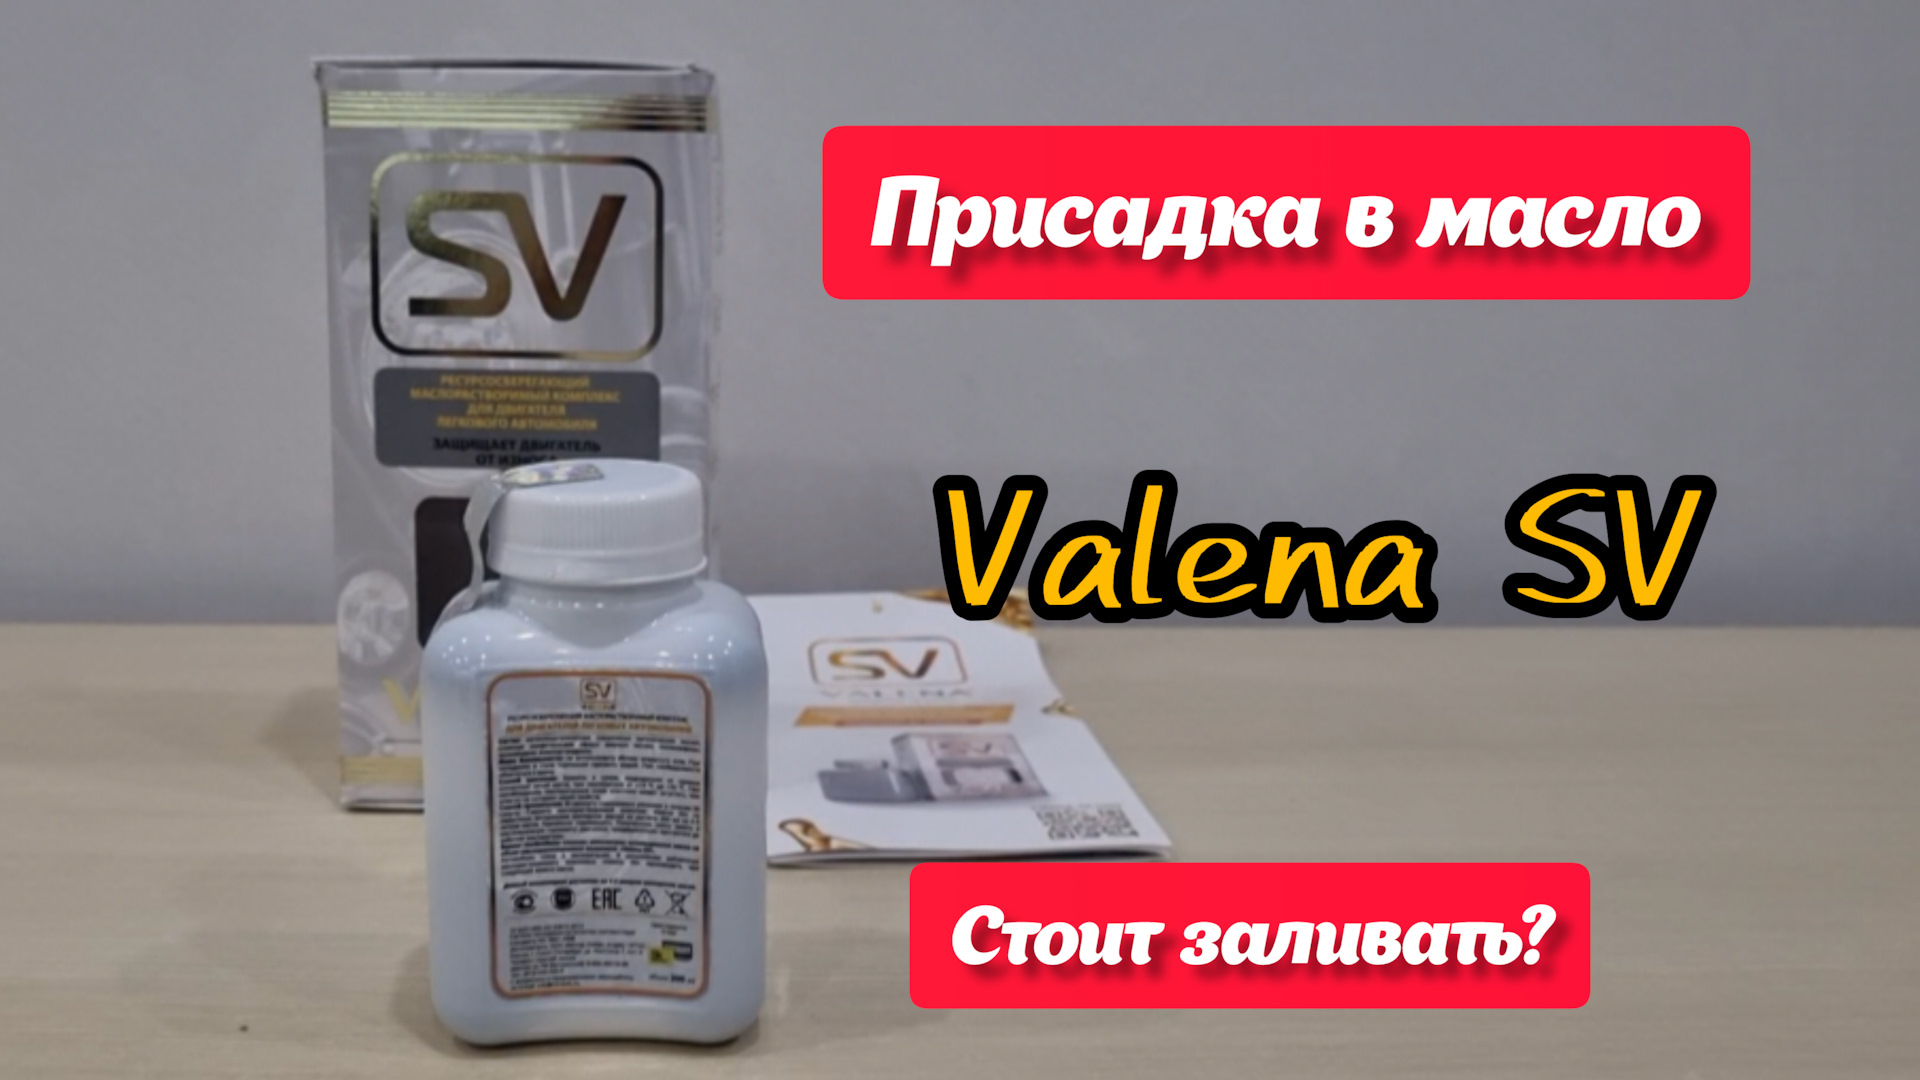 SV Valena присадка. Valena-SV масло. Valena присадка в масло. Безызносная присадка Валена.